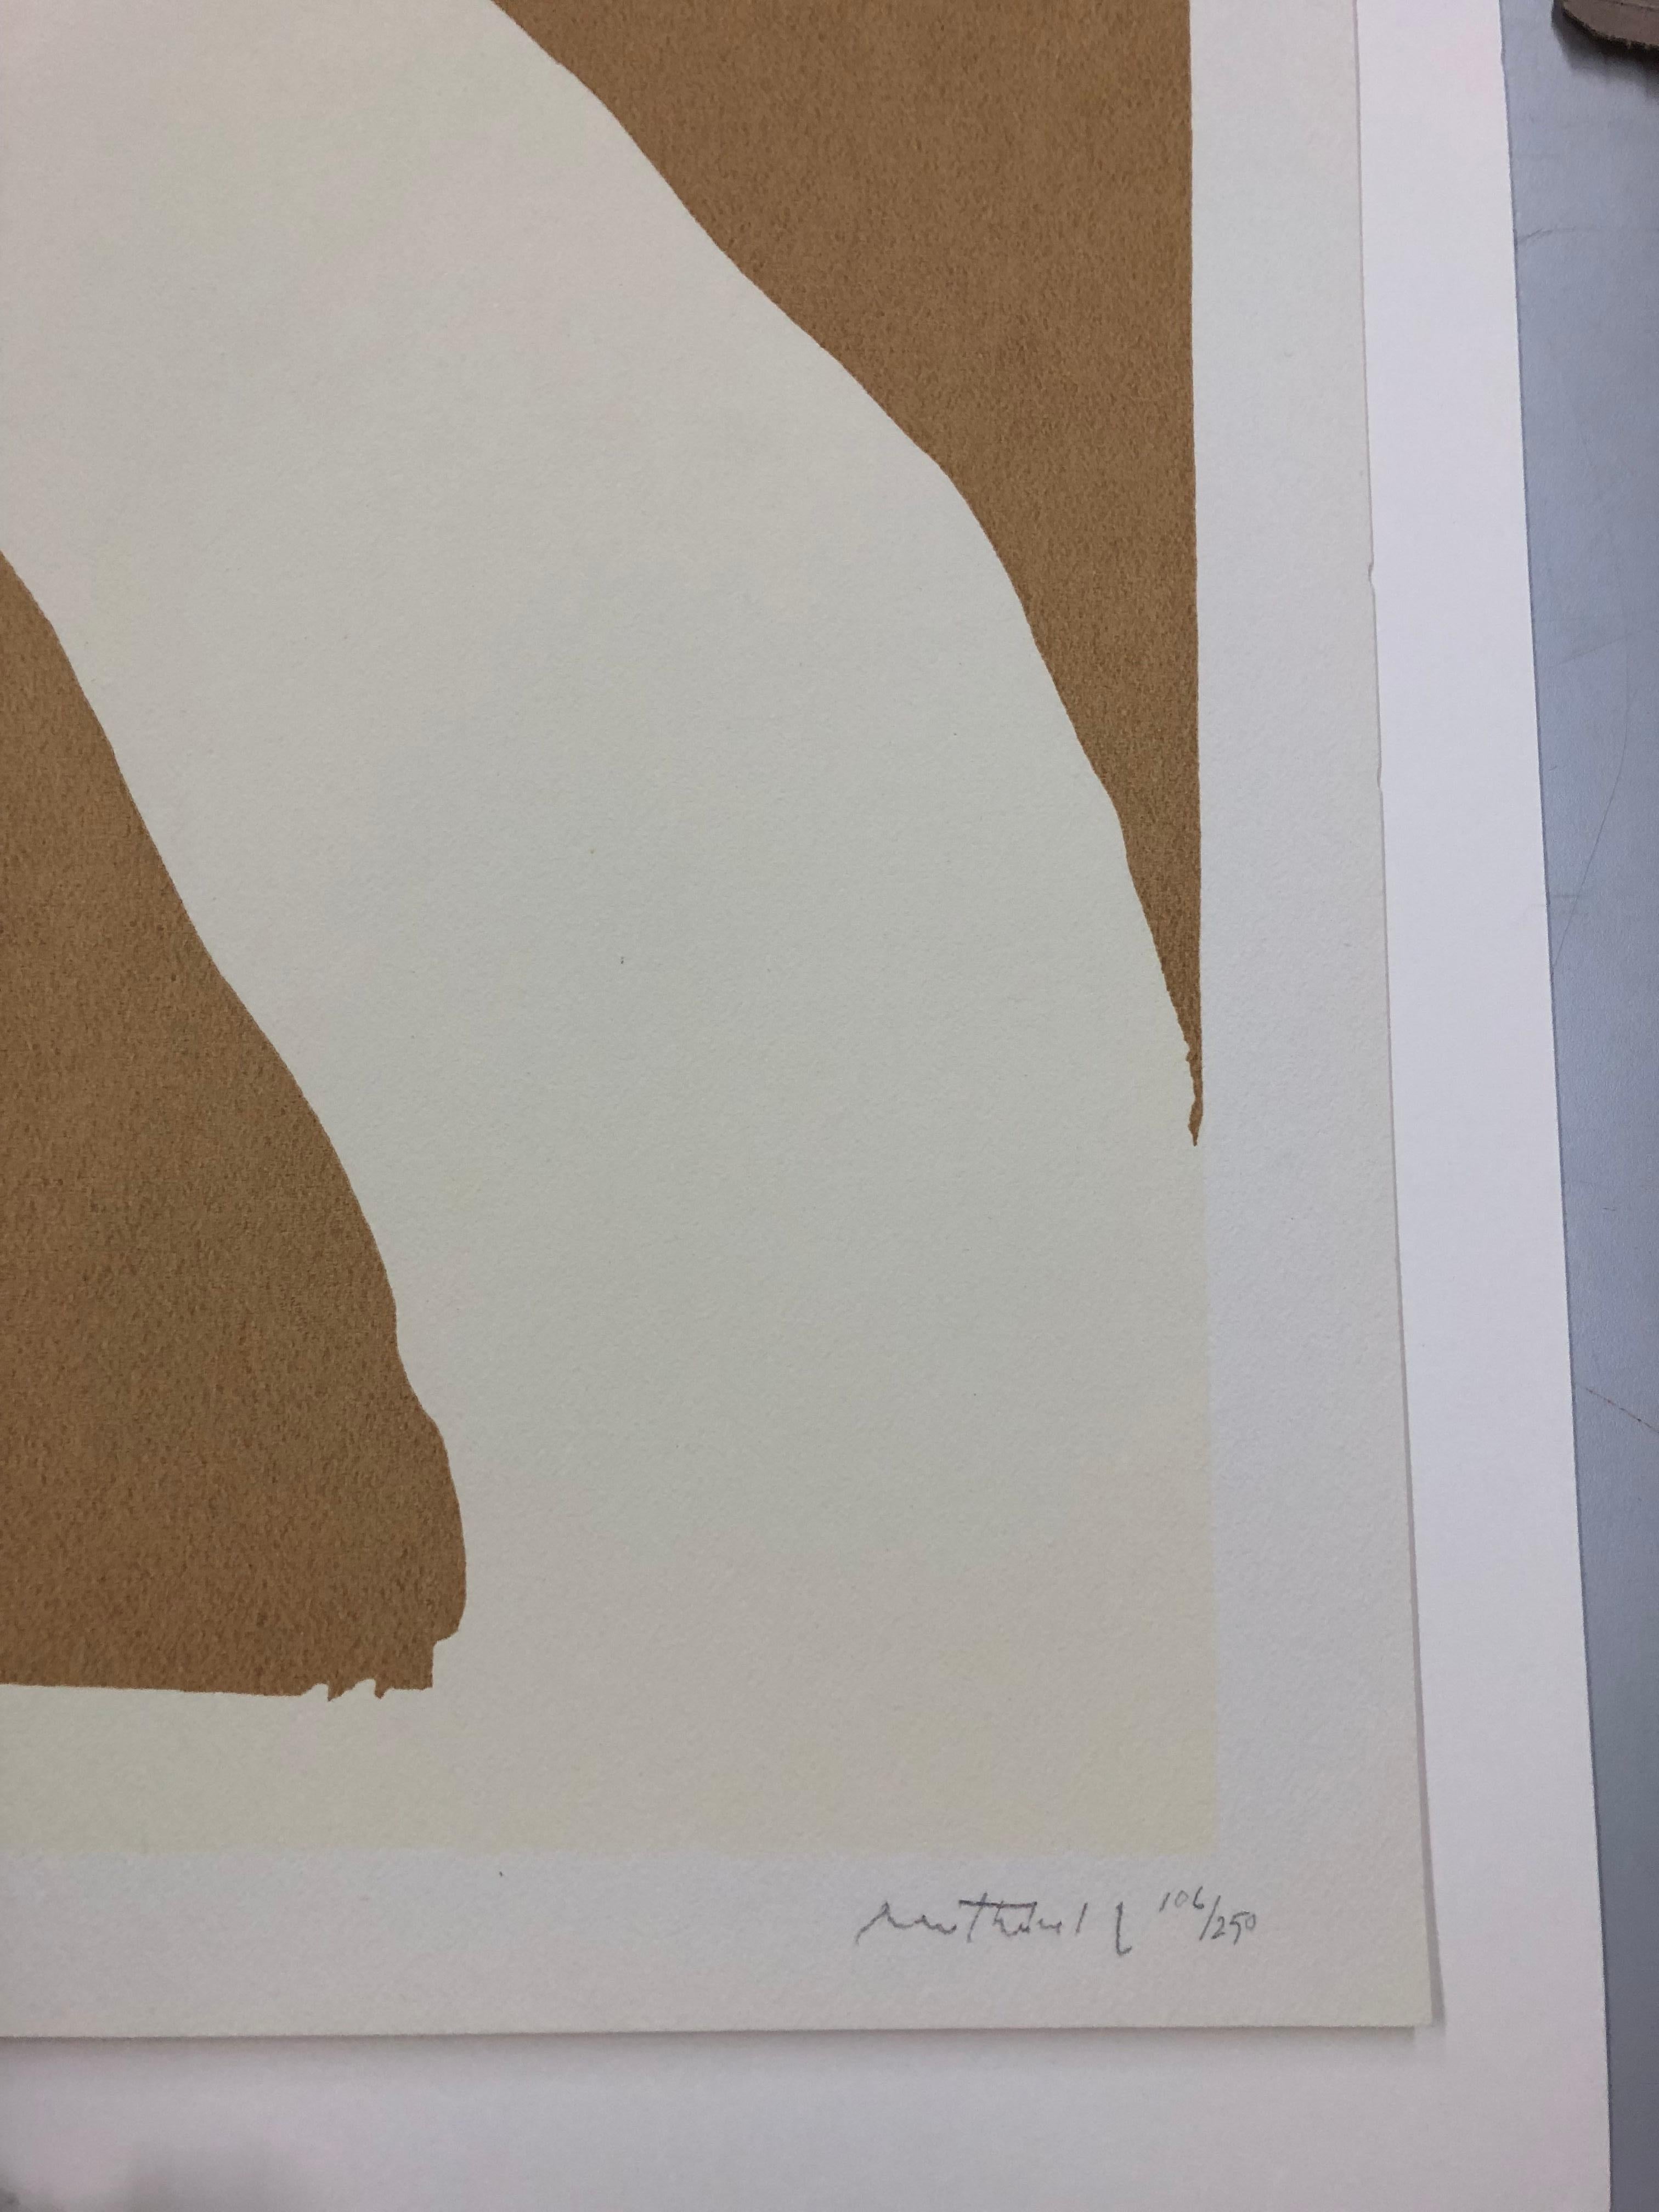 Sans titre - Expressionnisme abstrait Print par Robert Motherwell